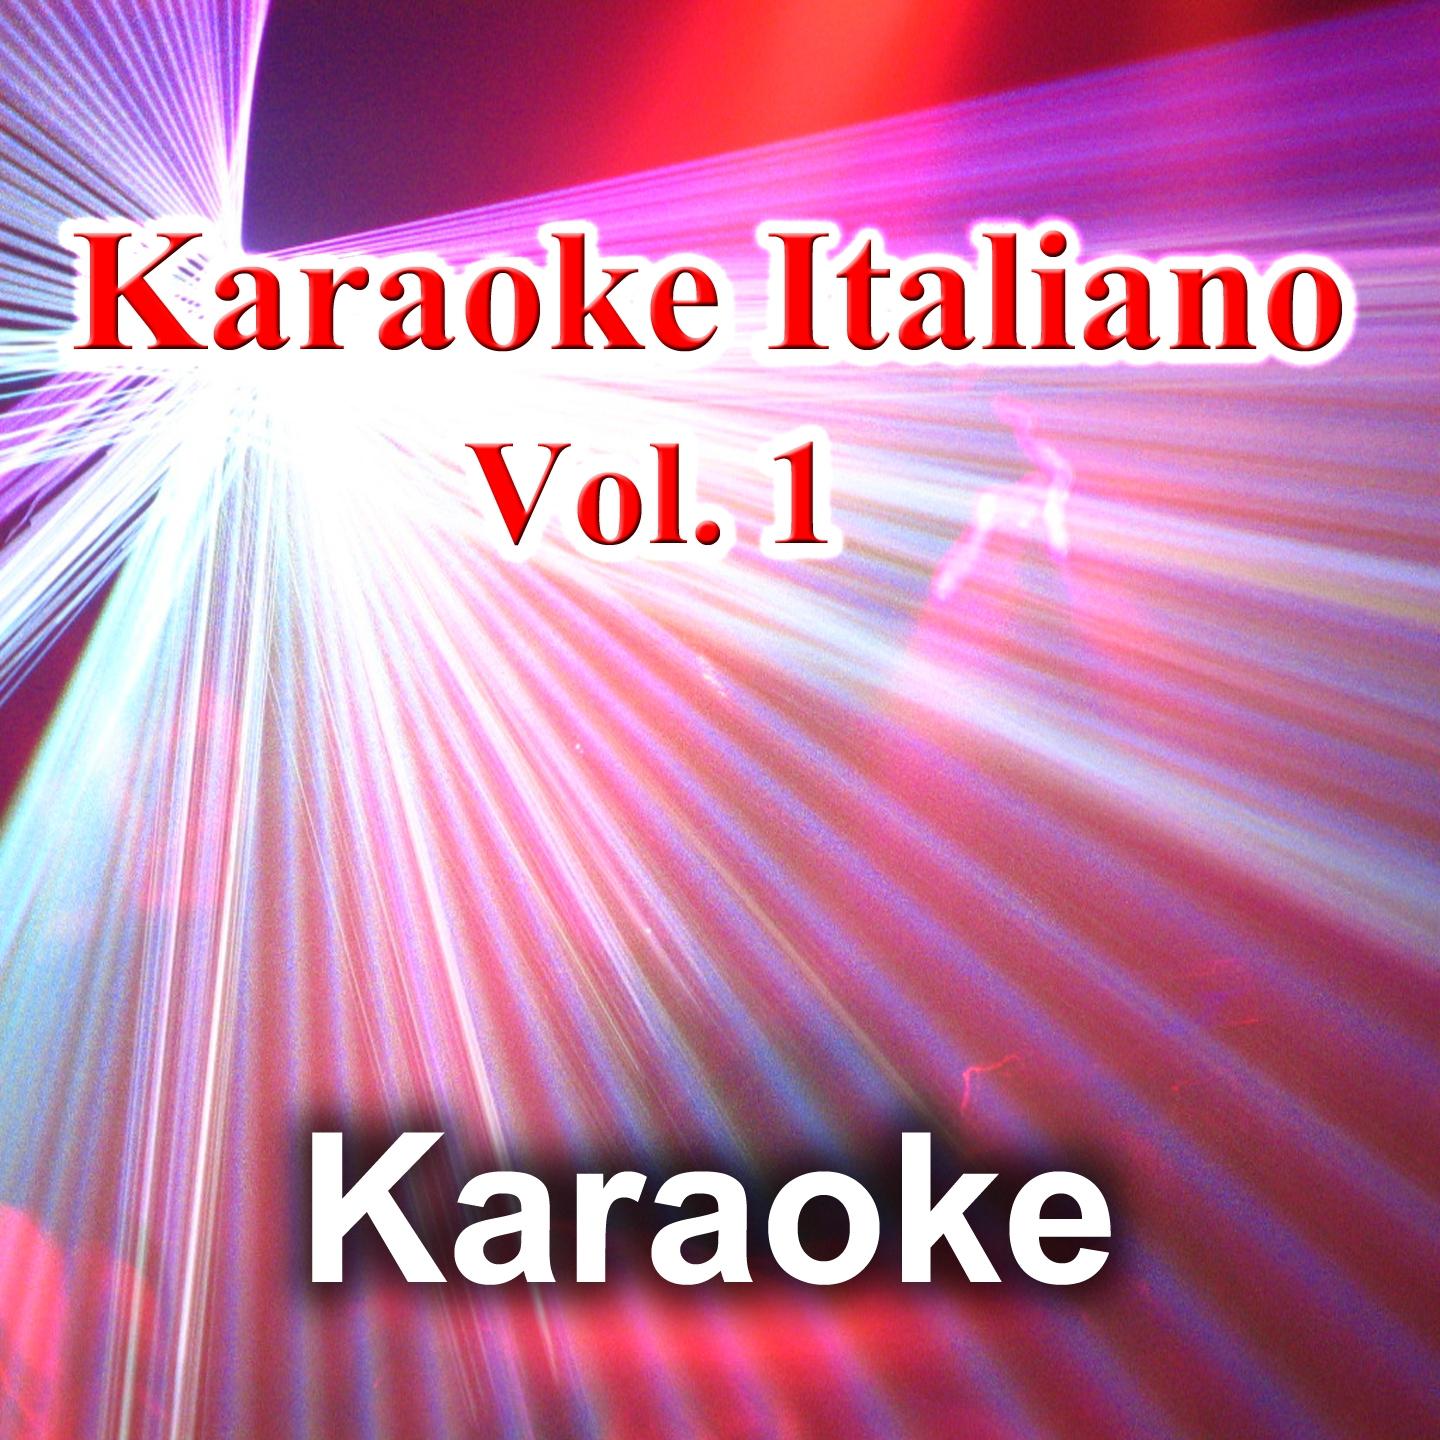 Antonello Venditti - Dalla pelle al cuore (Karaoke Version)